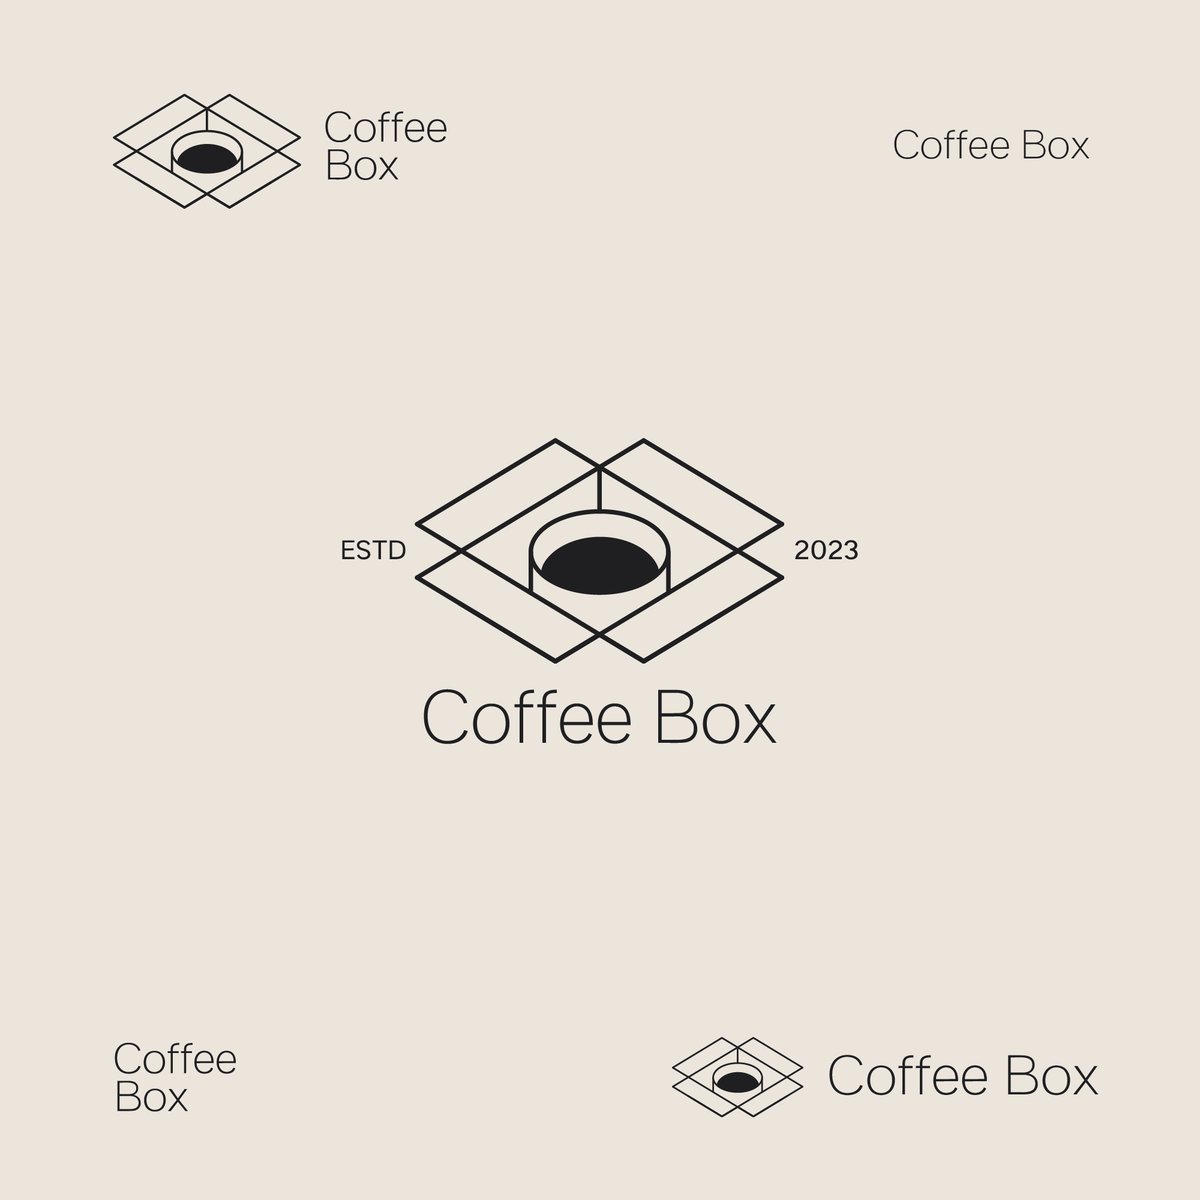 logo edition

#coffeelogo #cafelogo #logoideas #logoforsale #coffeebox #logocafe #logopassion #Logodesigner #logos #logoinspiration #logosale #forsale